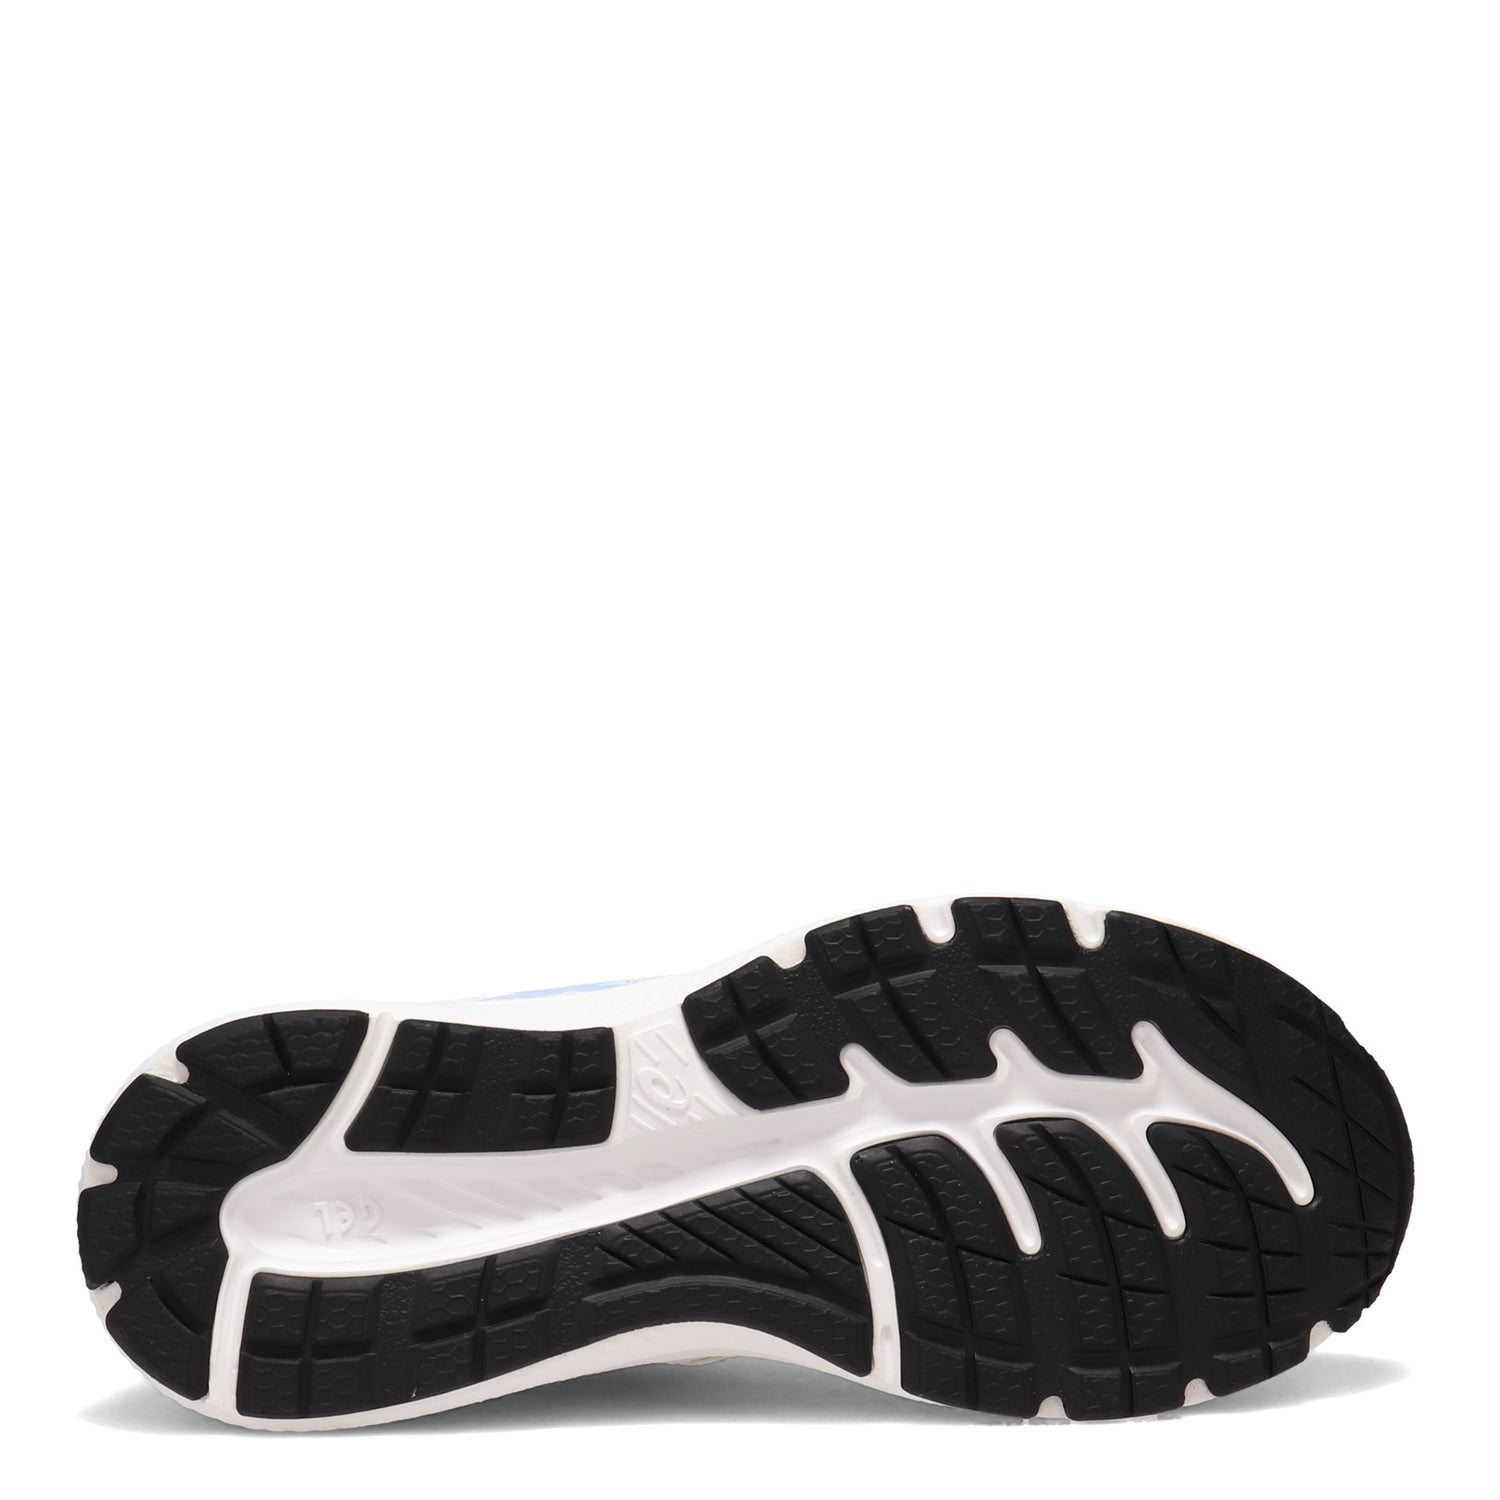 Peltz Shoes  Women's ASICS GEL-Contend 7 Running Shoe WHITE MIST 1012A911.103